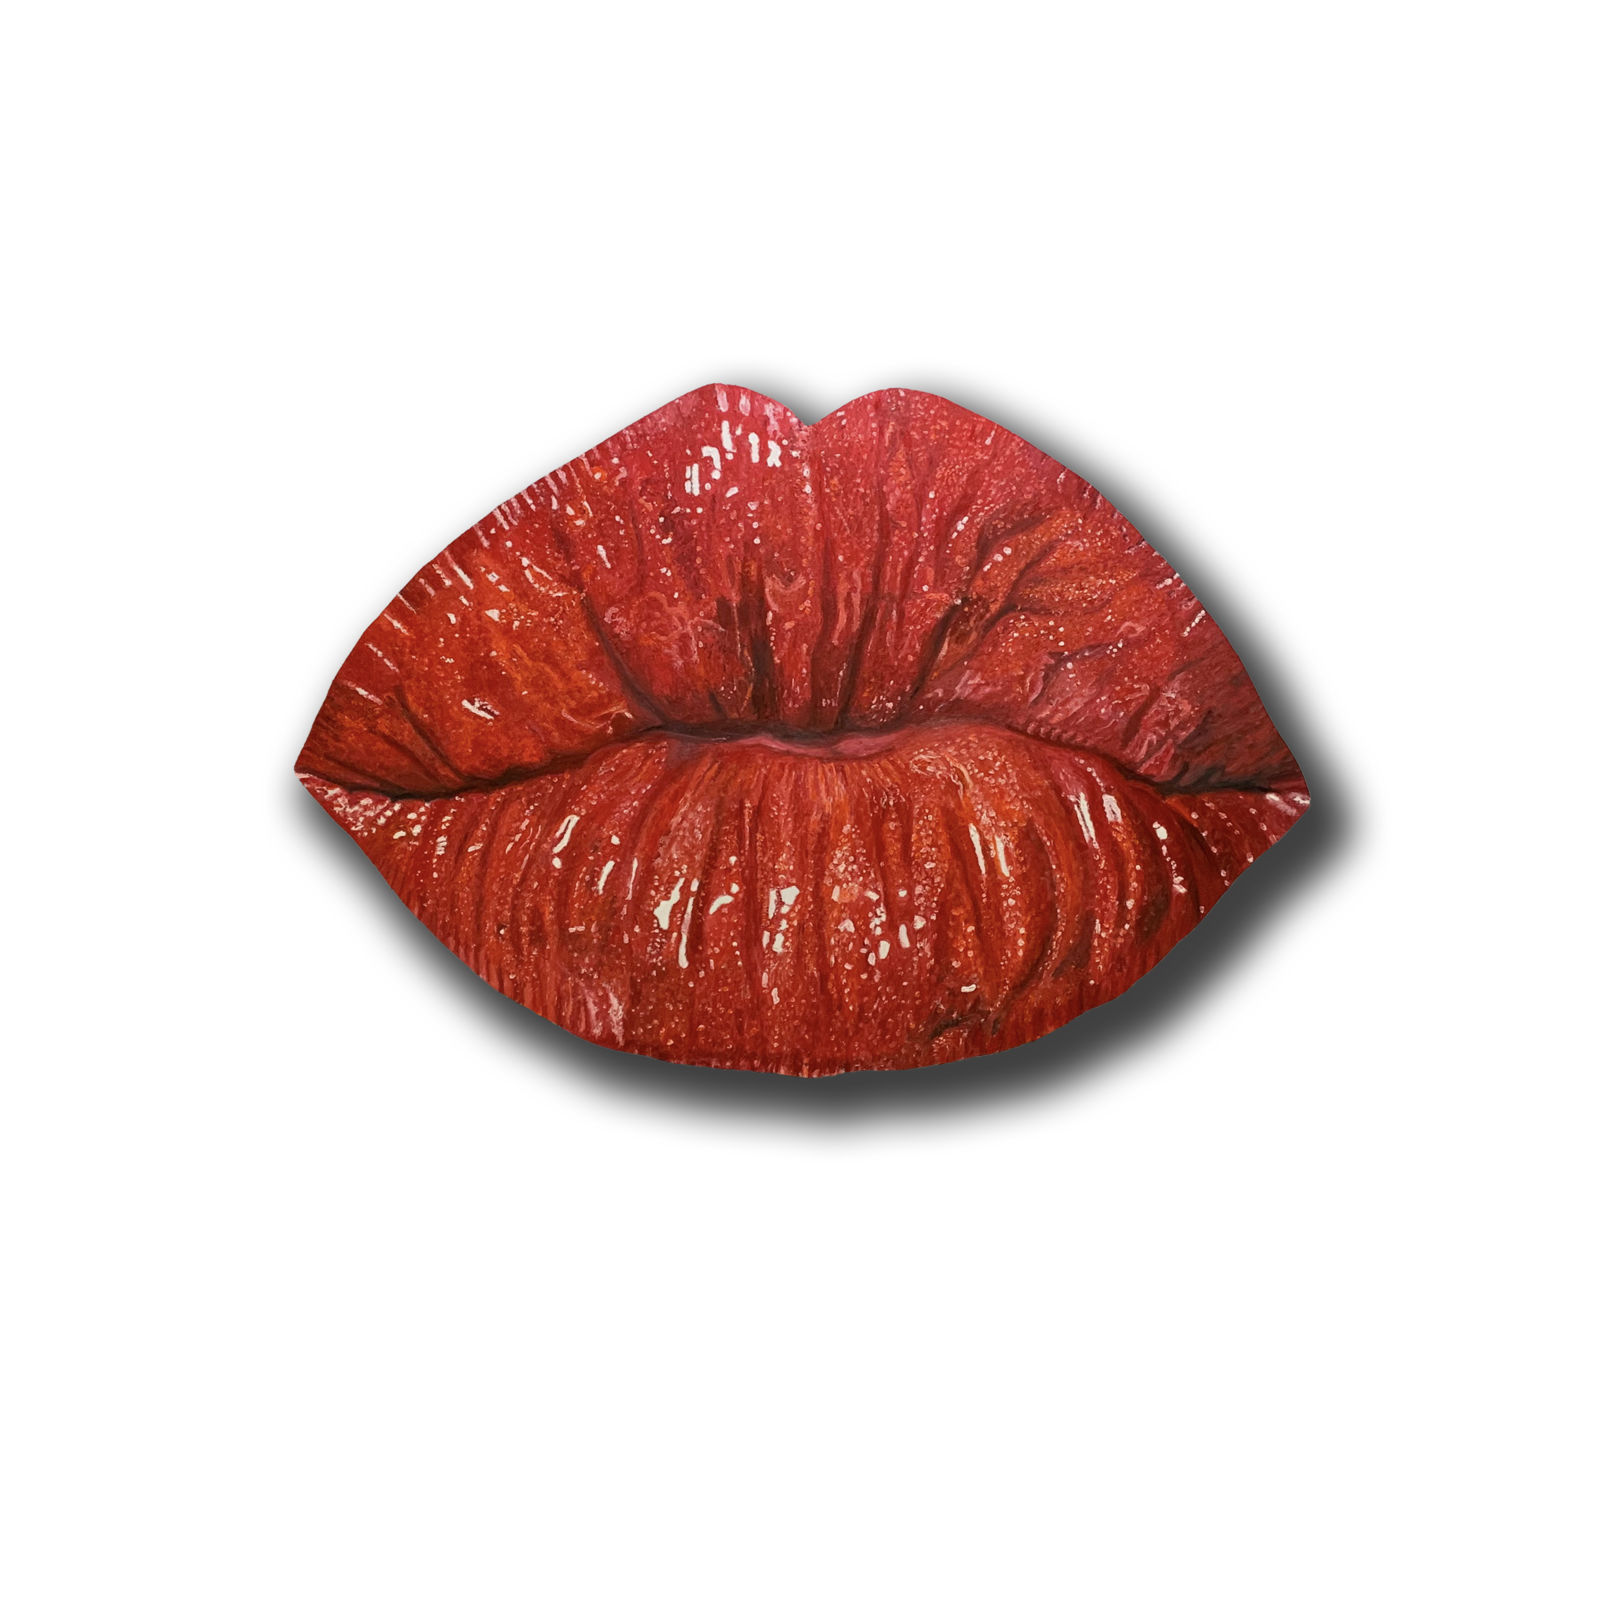 Kiss_me_l_79_x_114_cm_l_Öl_auf_ausgesägter_Alu-Dibondplatte_l_2019.jpg